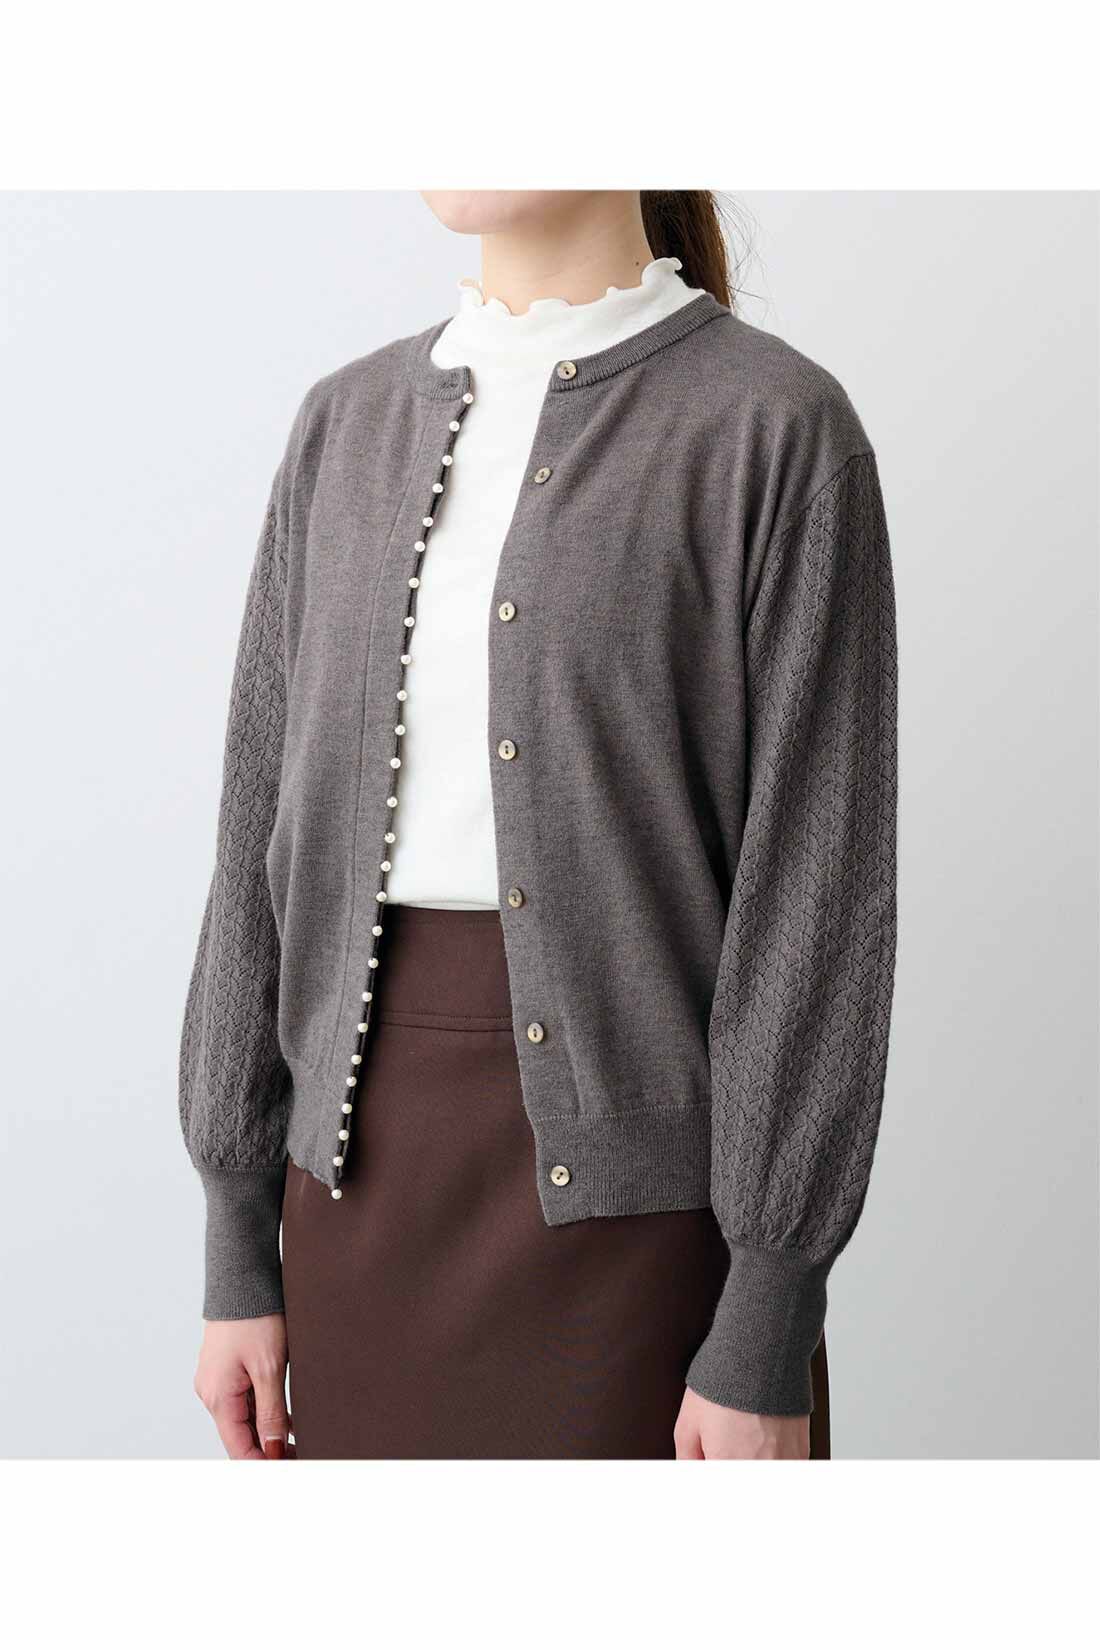 IEDIT|IEDIT[イディット]　アクセサリーみたいなミニパールが上品な 柄編み袖のカーディガン〈グレー〉|※着用イメージです。お届けするカラーとは異なります。